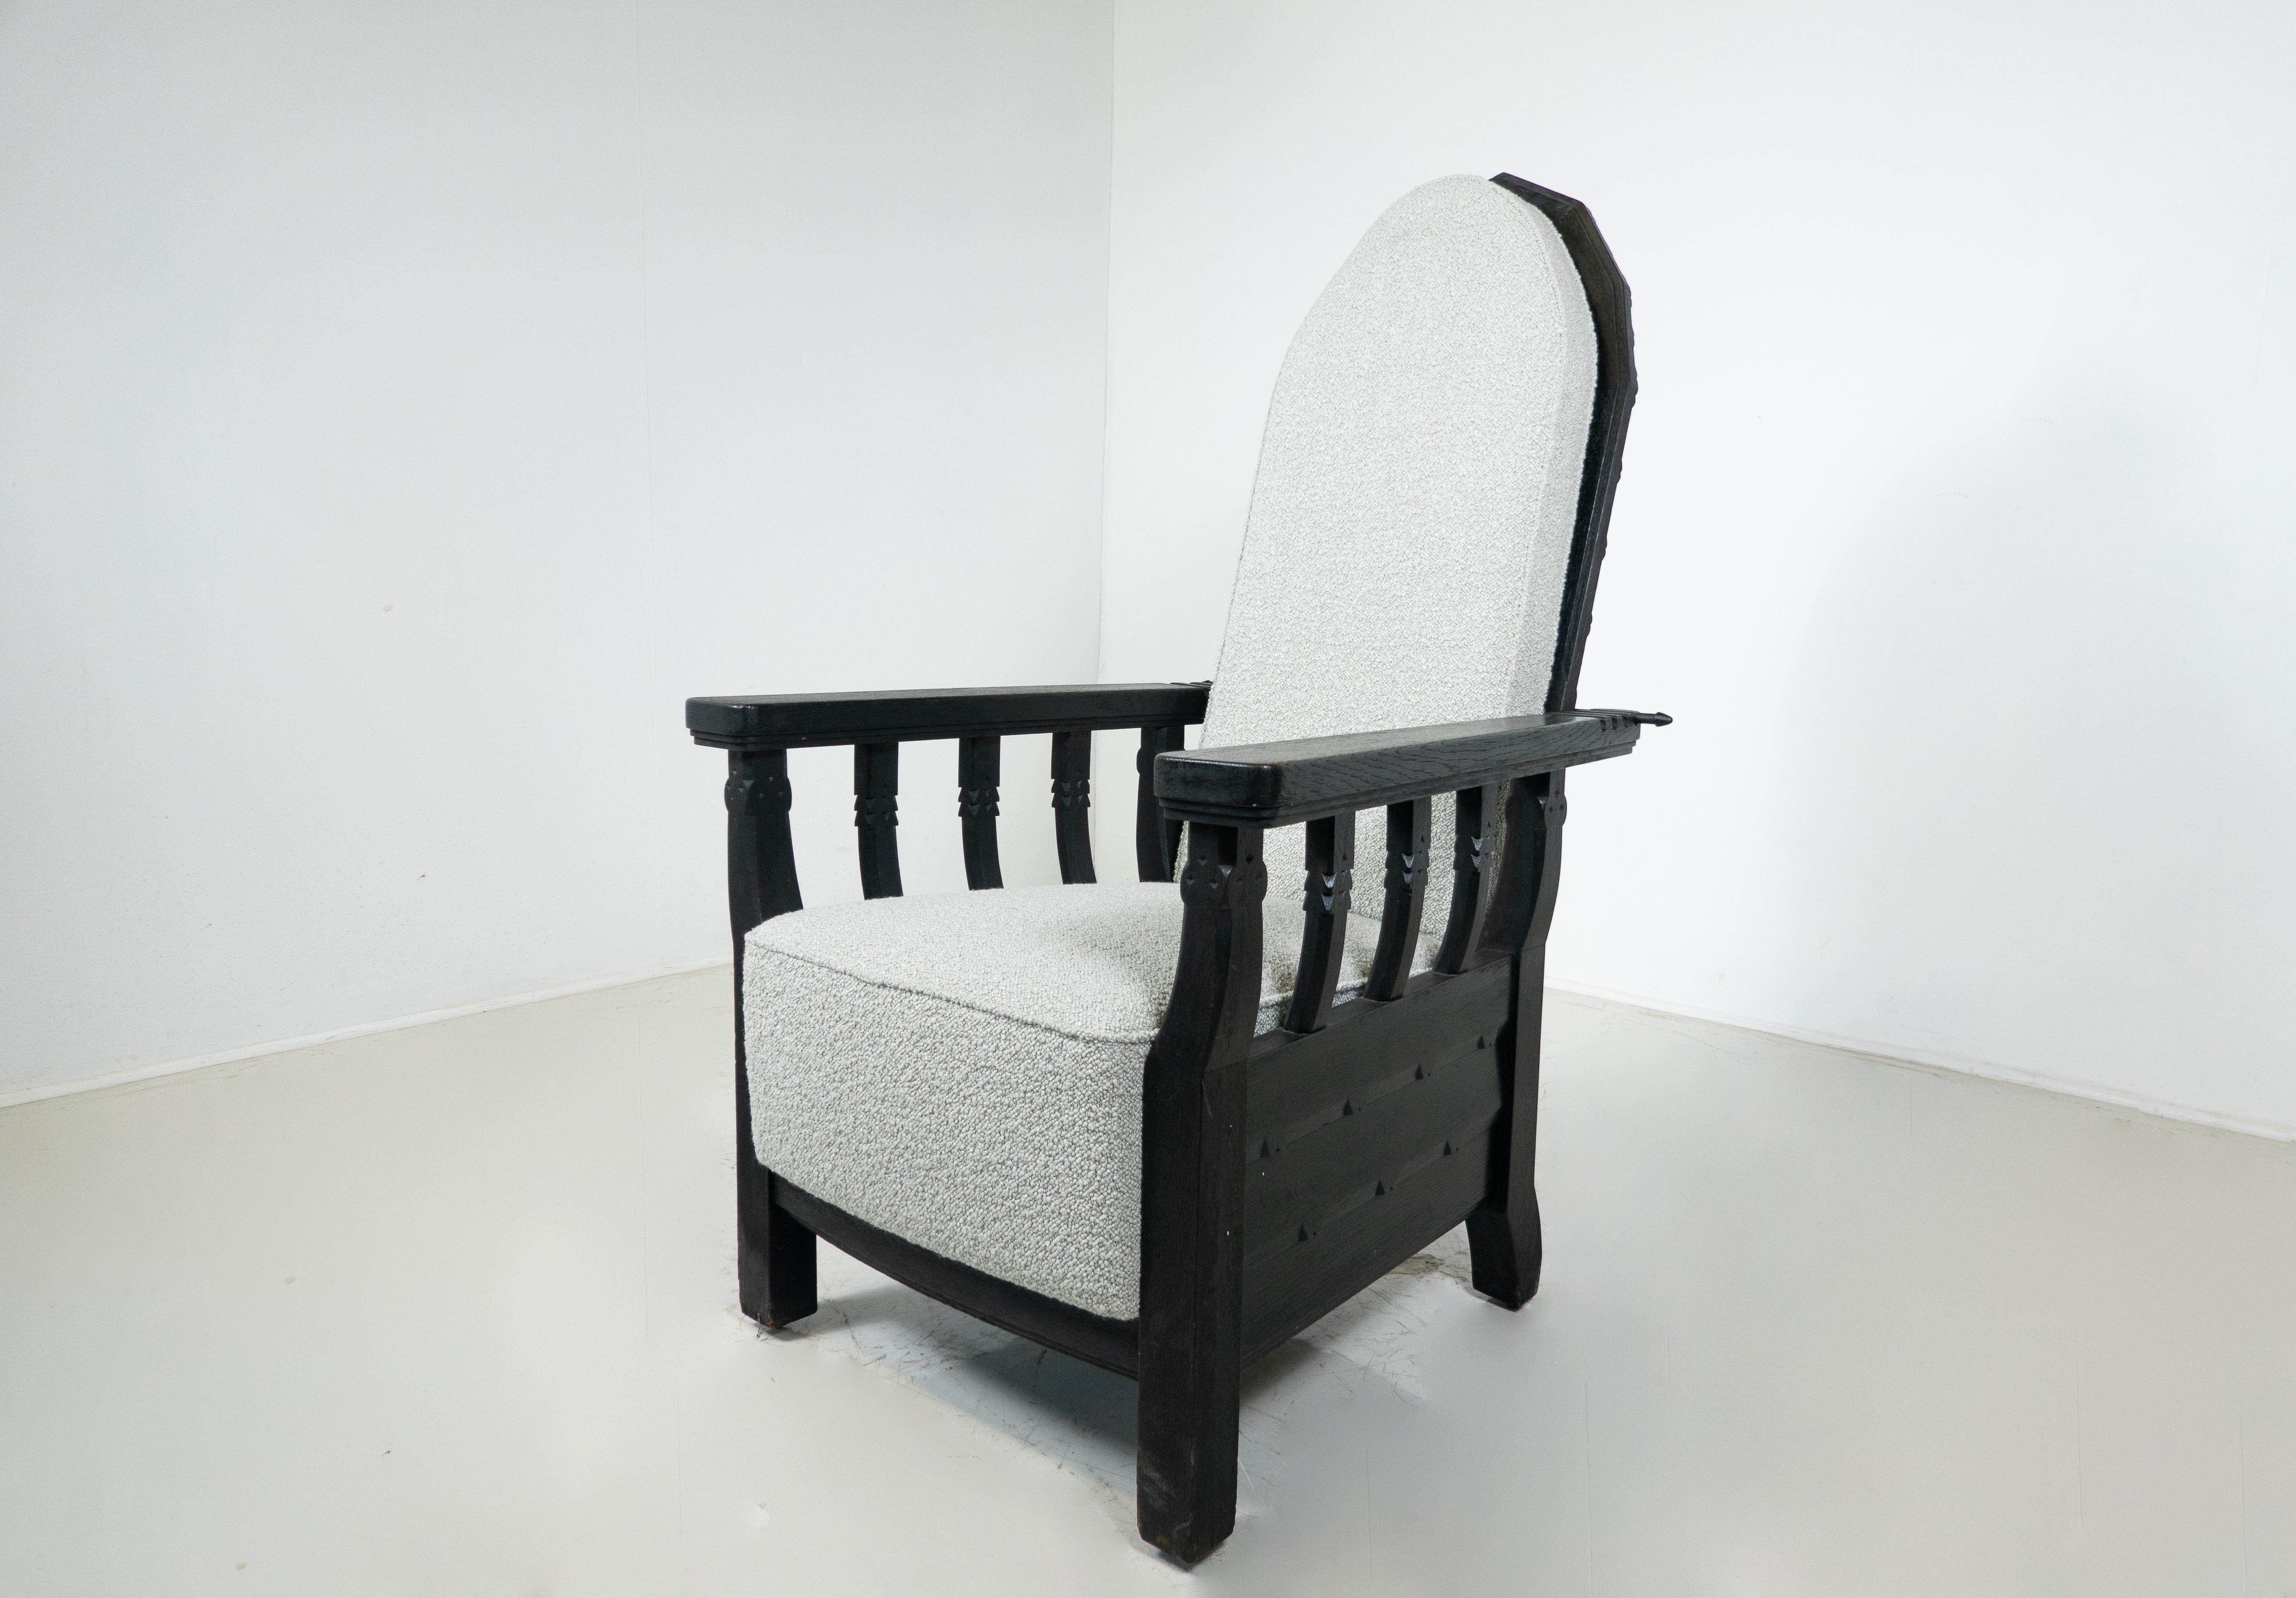 Ungarischer Sessel mit verstellbarer Rückenlehne von Toroczkai Wigand, 1920er Jahre - Neu gepolstert